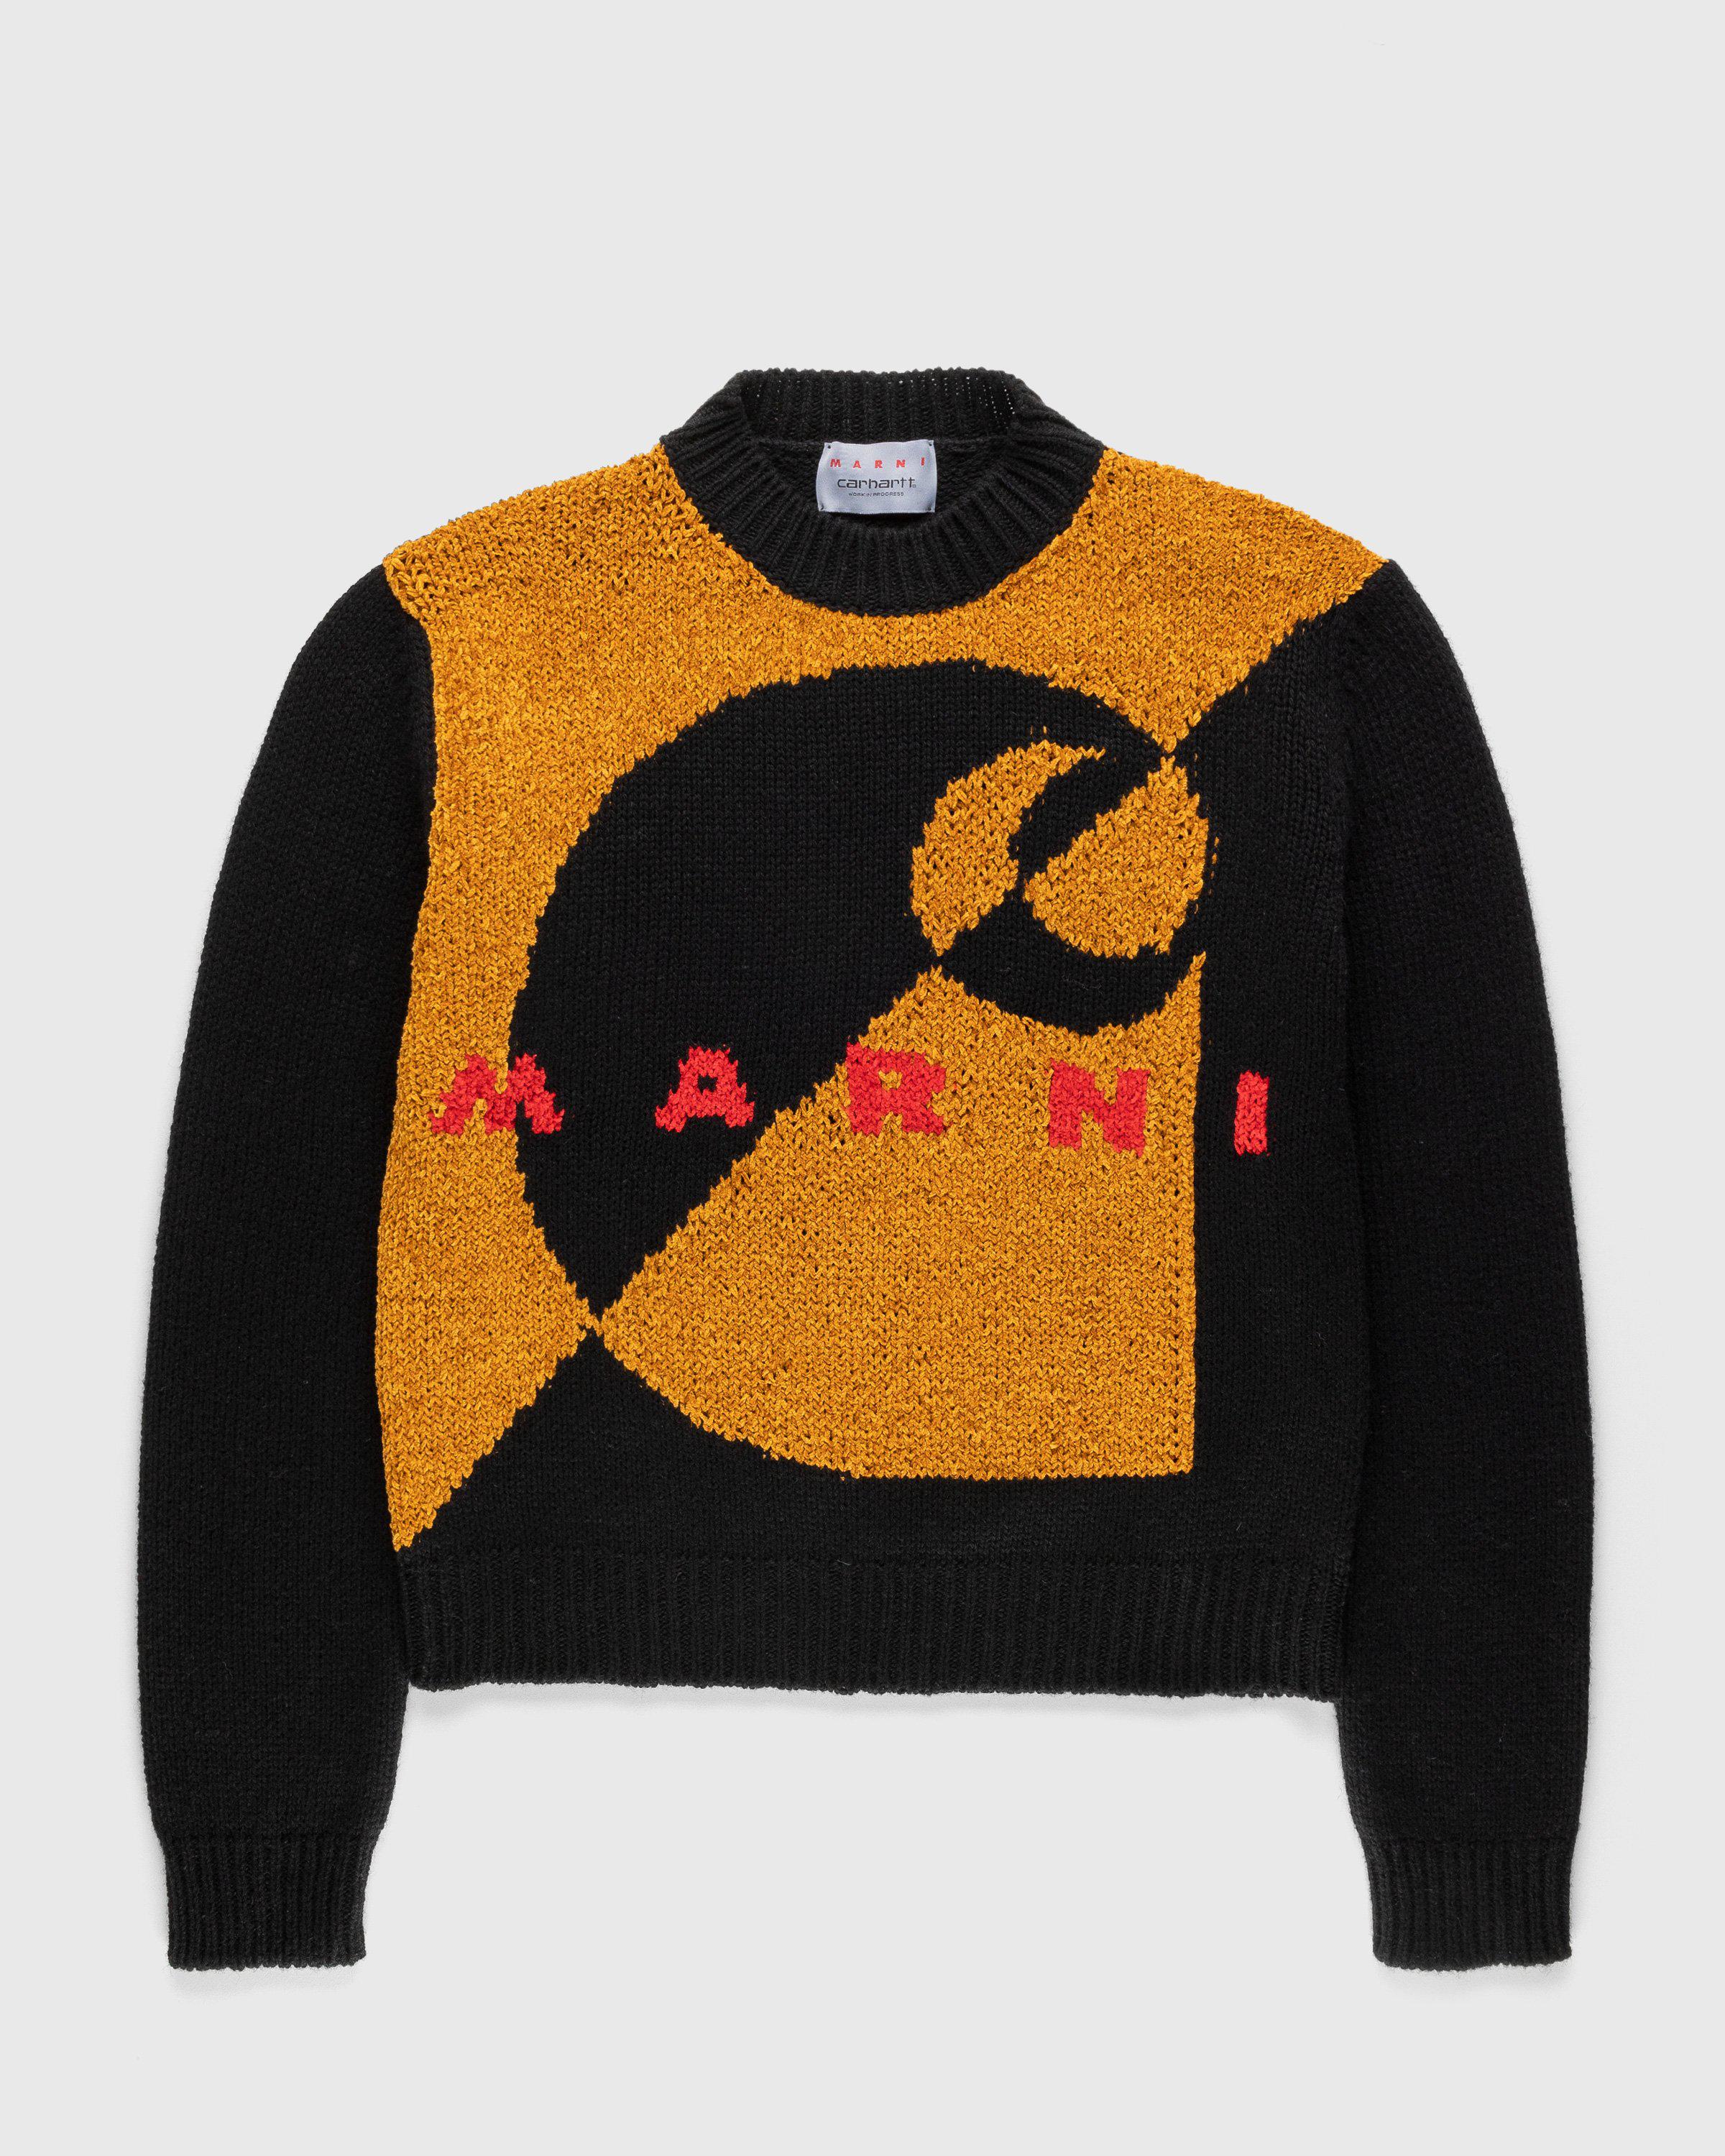 Marni x Carhartt WIP – Intarsia Logo Sweater Brown by MARNI X CARHARTT WIP